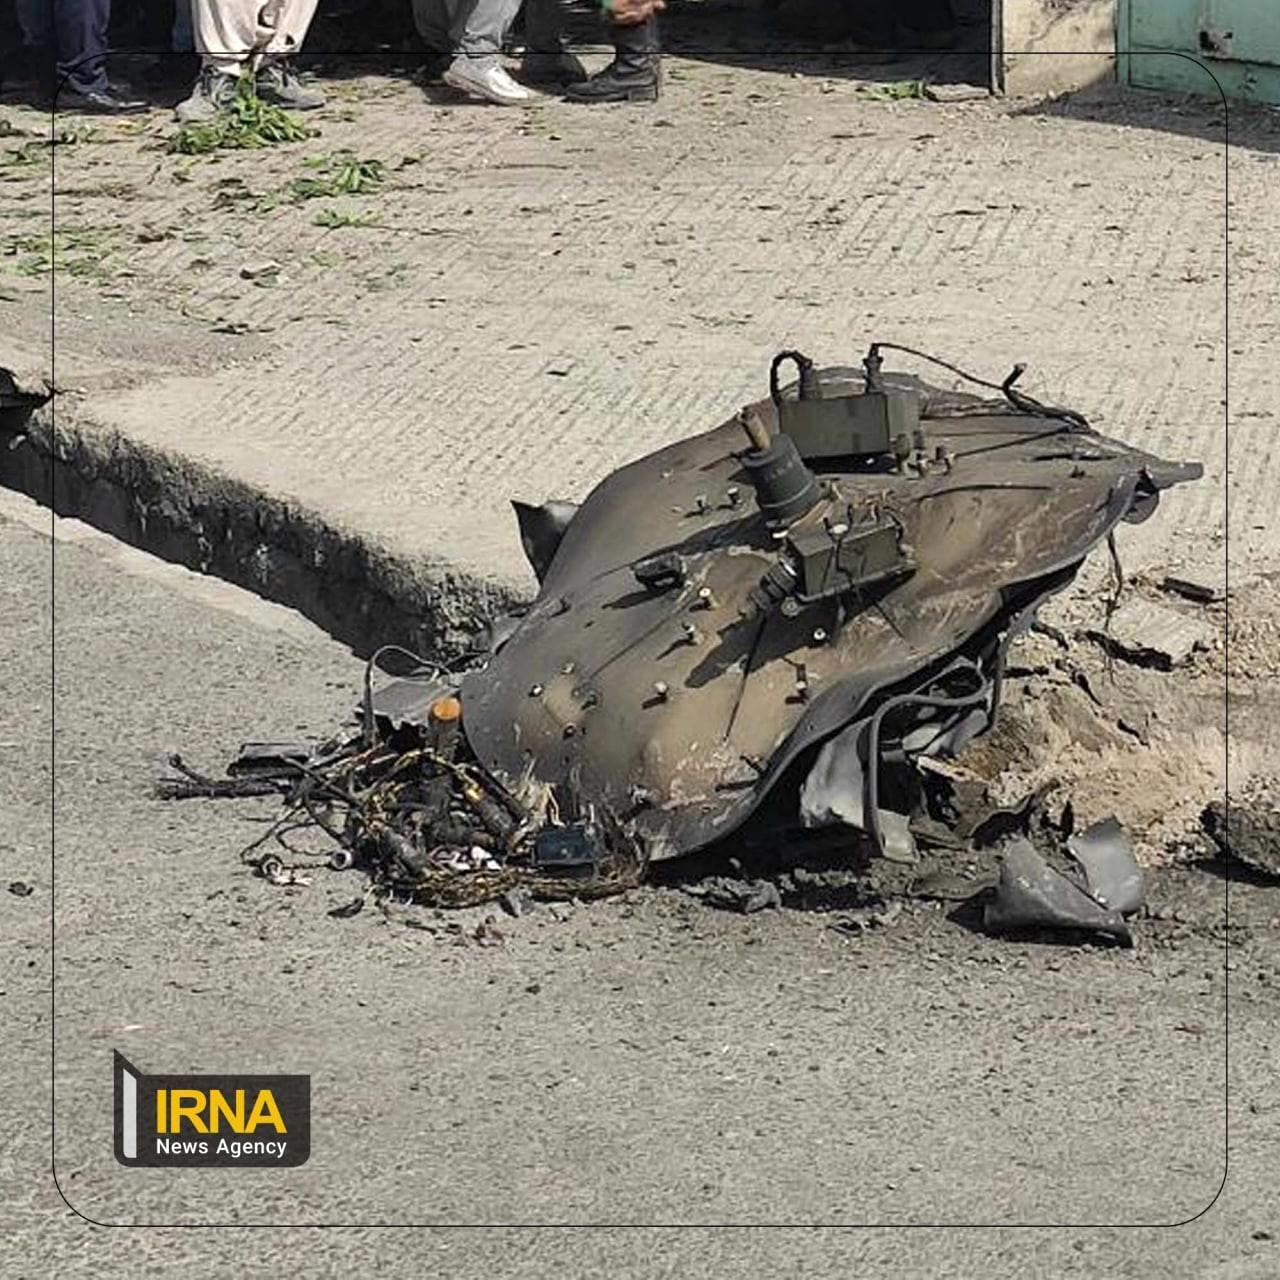 سخنگوی وزارت دفاع: نقص فنی، سرجنگی یک موشک به سمت شهر گرگان منحرف کرد

